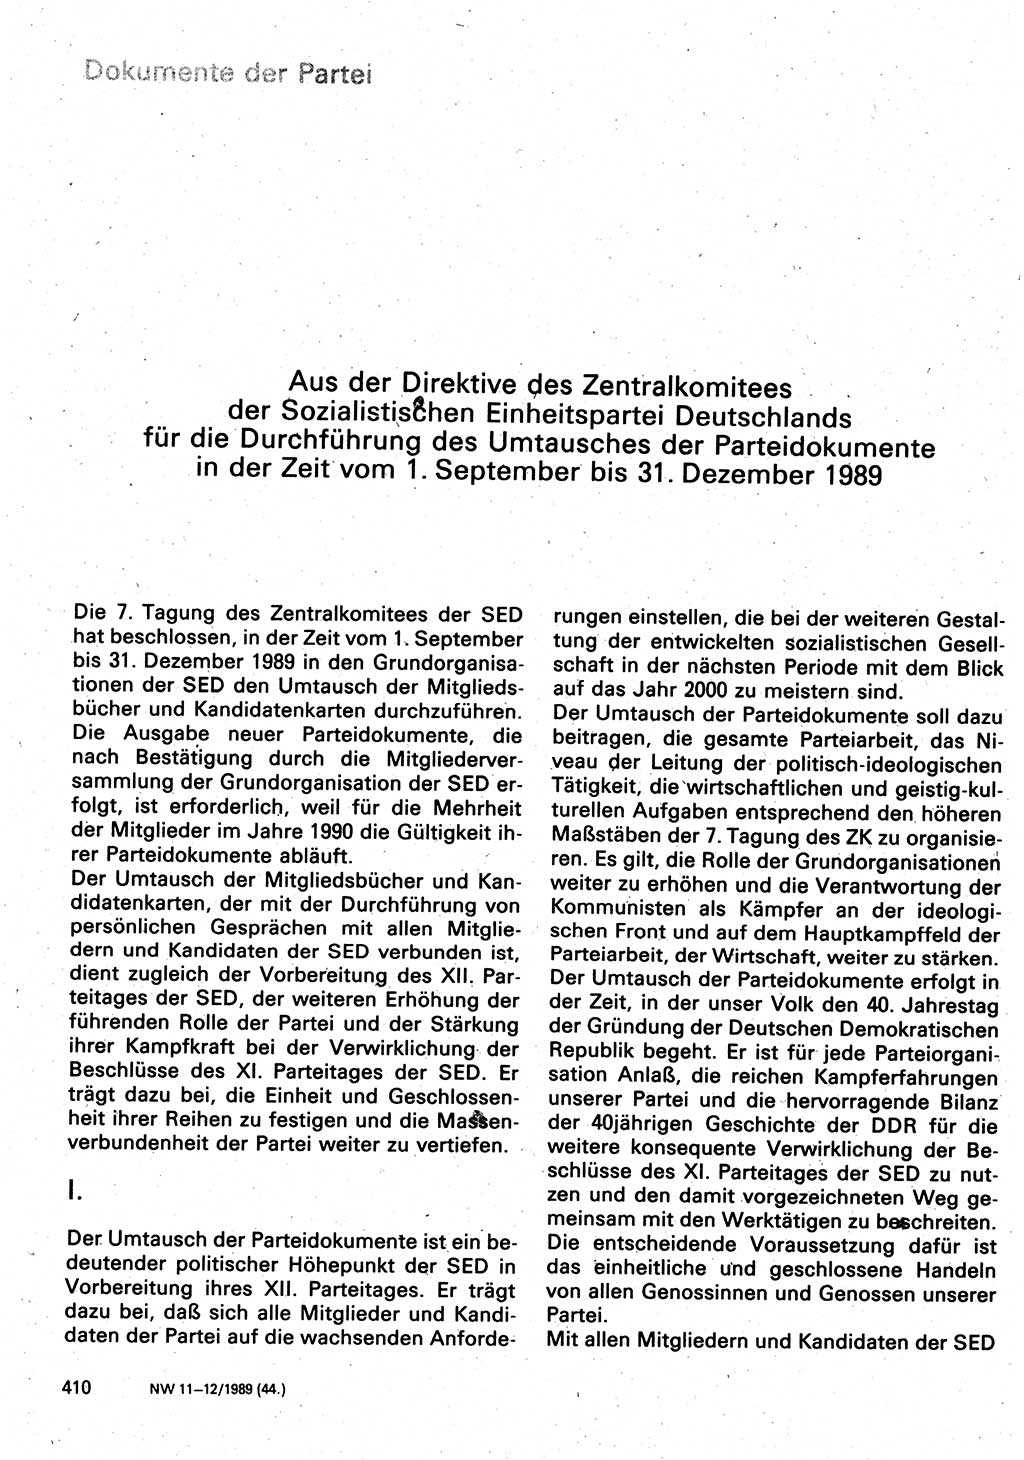 Neuer Weg (NW), Organ des Zentralkomitees (ZK) der SED (Sozialistische Einheitspartei Deutschlands) für Fragen des Parteilebens, 44. Jahrgang [Deutsche Demokratische Republik (DDR)] 1989, Seite 410 (NW ZK SED DDR 1989, S. 410)